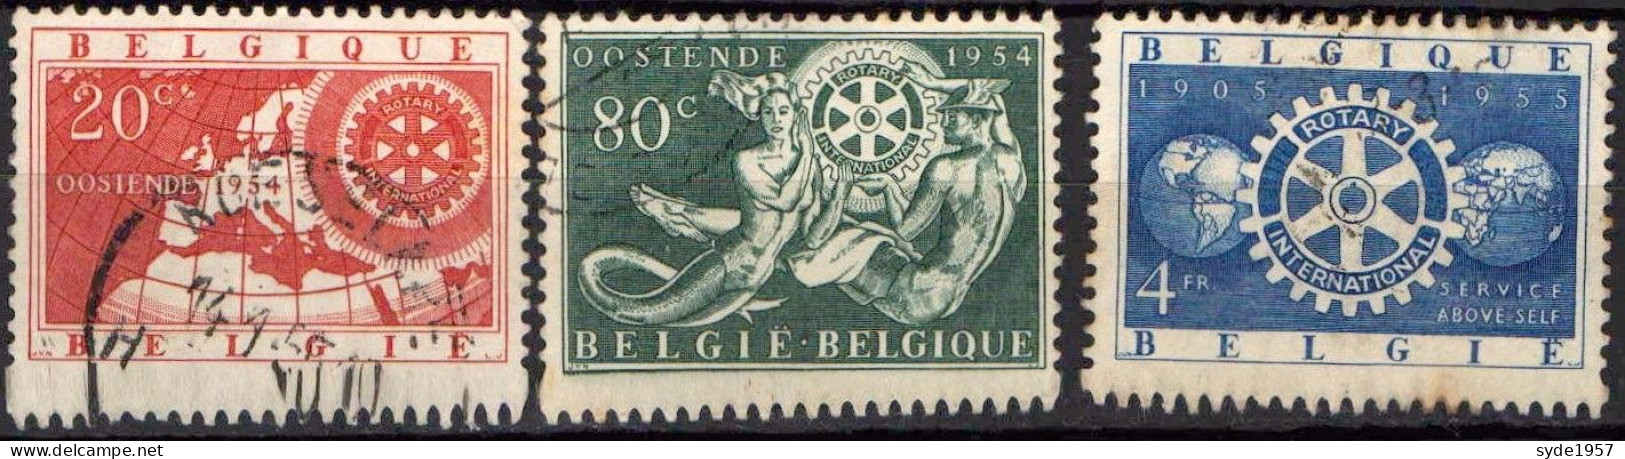 Belgique 1954 50ans Rotary International COB952 à 954 (complet)- Oblitérés - Usados